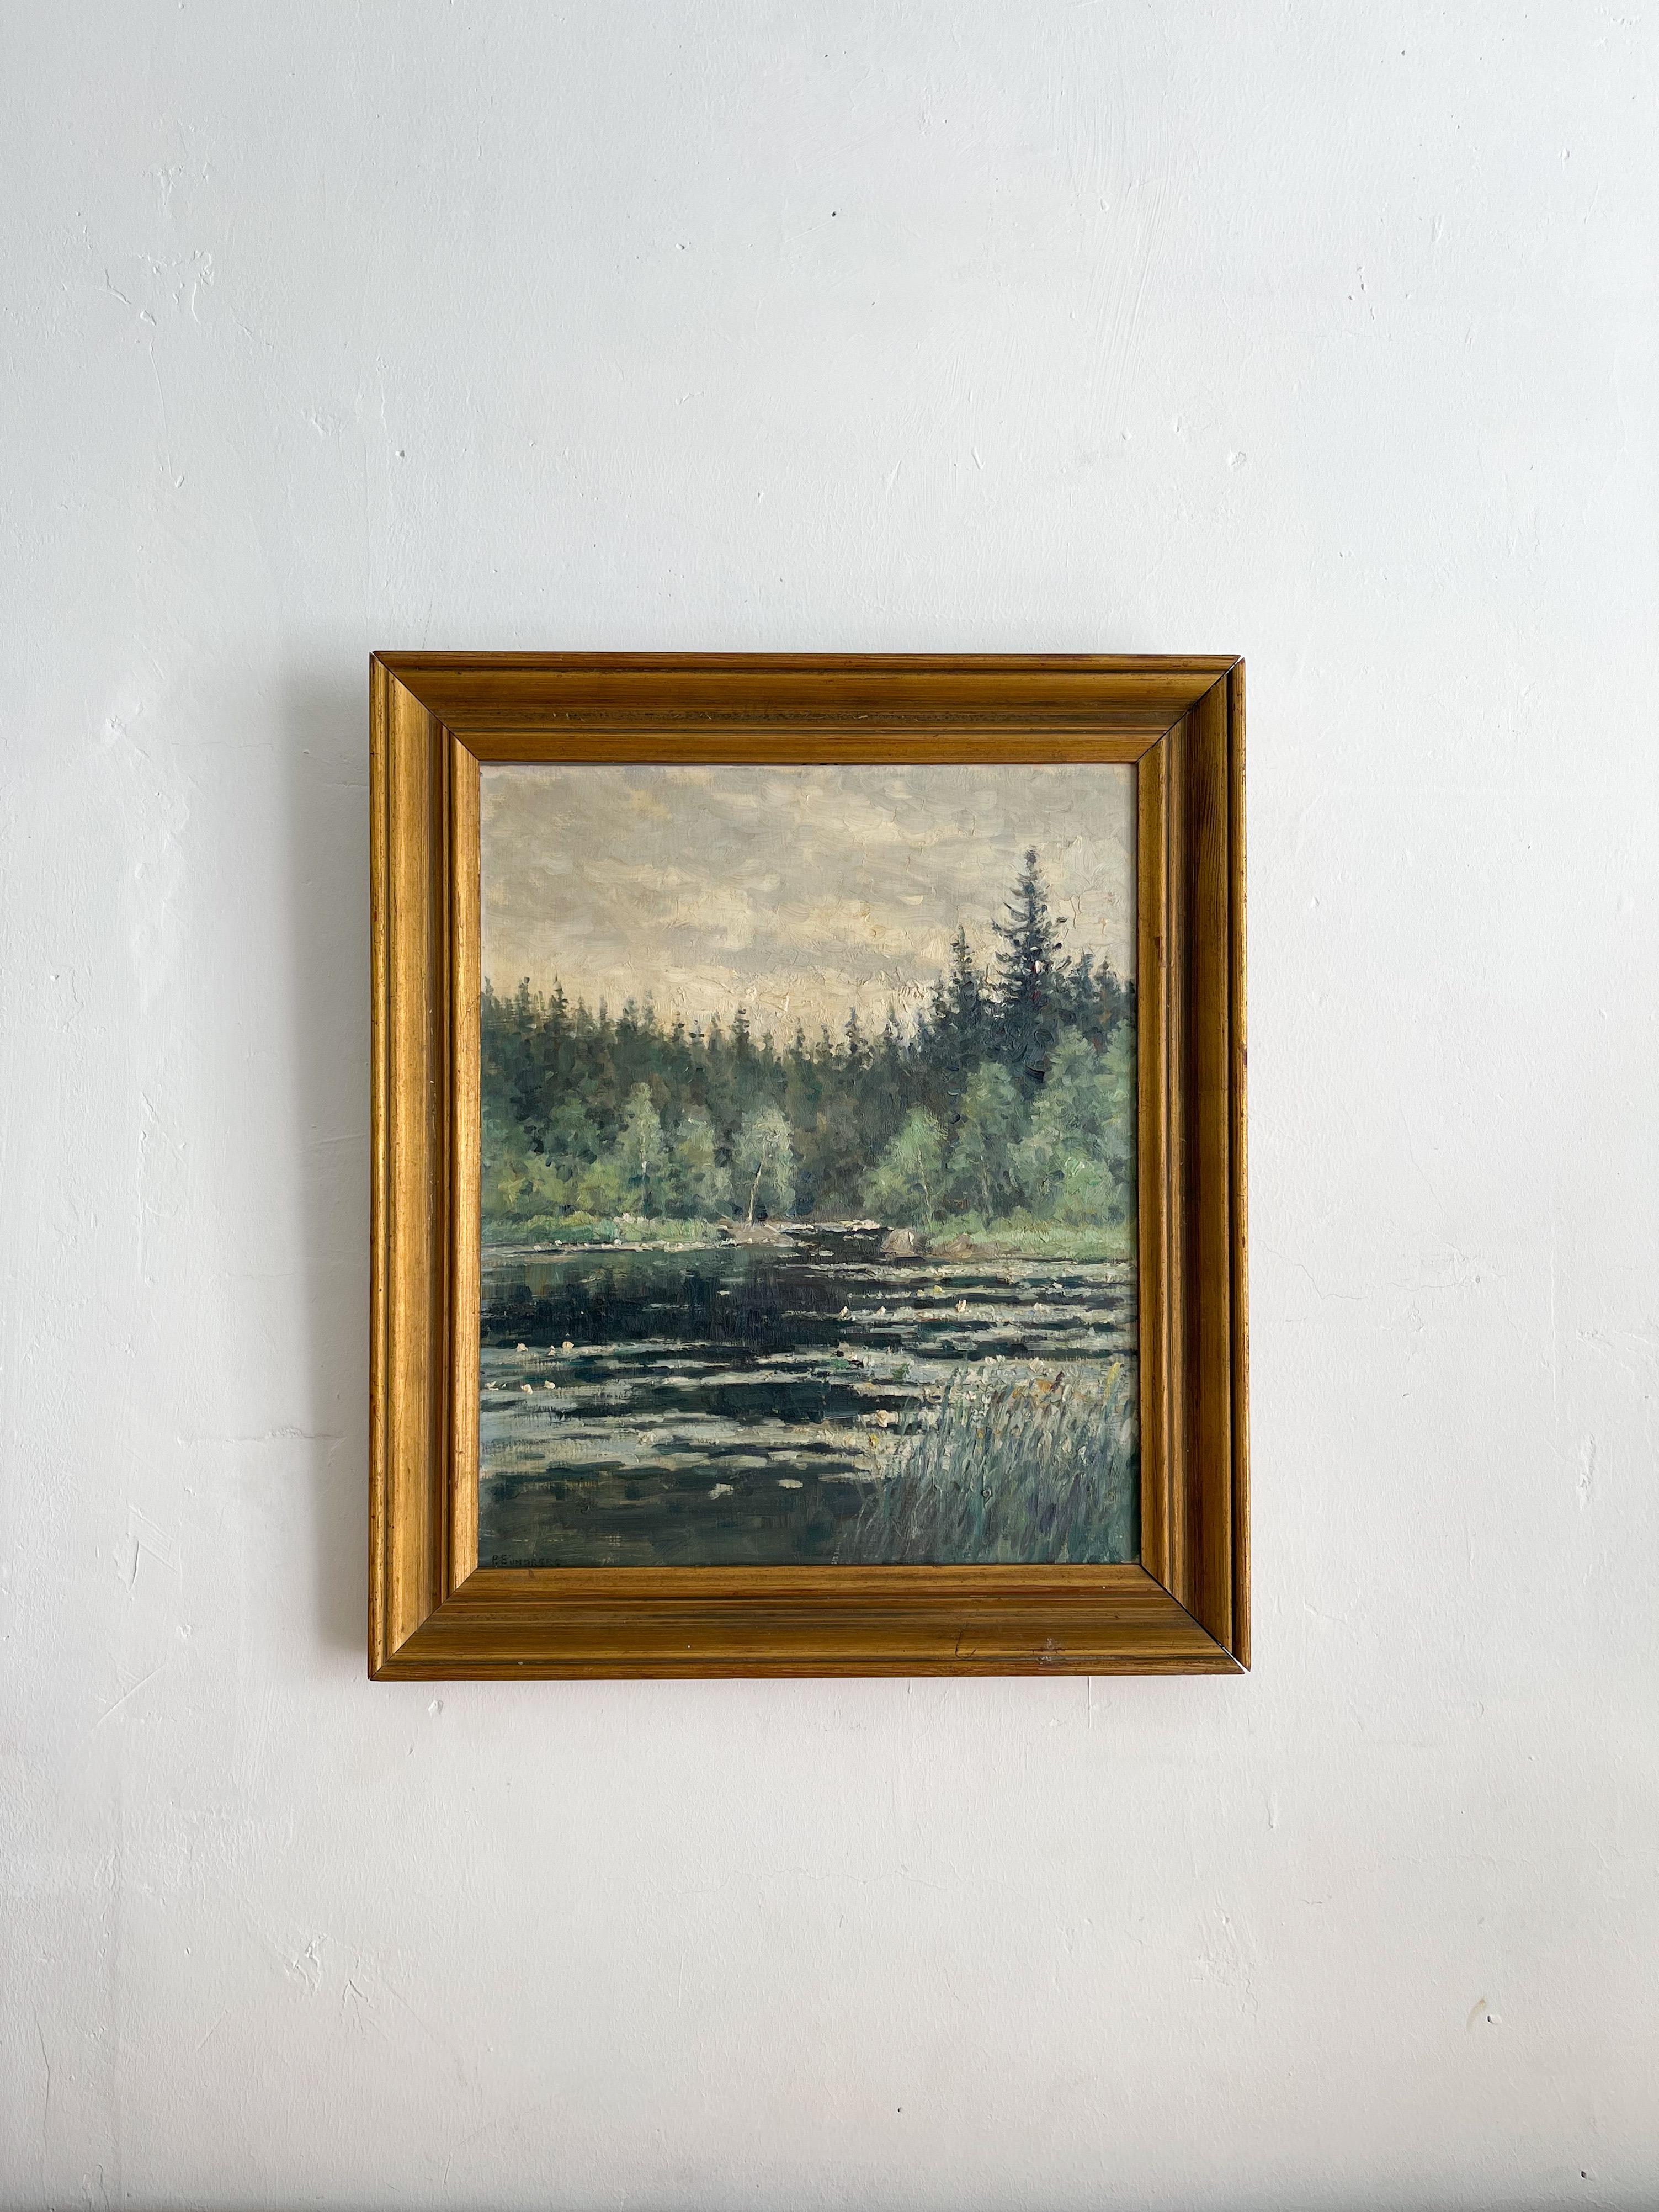 Per Sundberg est un artiste suédois né en 1887 et décédé en 1968. Ce paysage, d'une qualité exceptionnelle, est l'un de ses premiers travaux.

De nombreuses galeries et musées importants, tels que Magasin III Stockholm, ont présenté les œuvres de